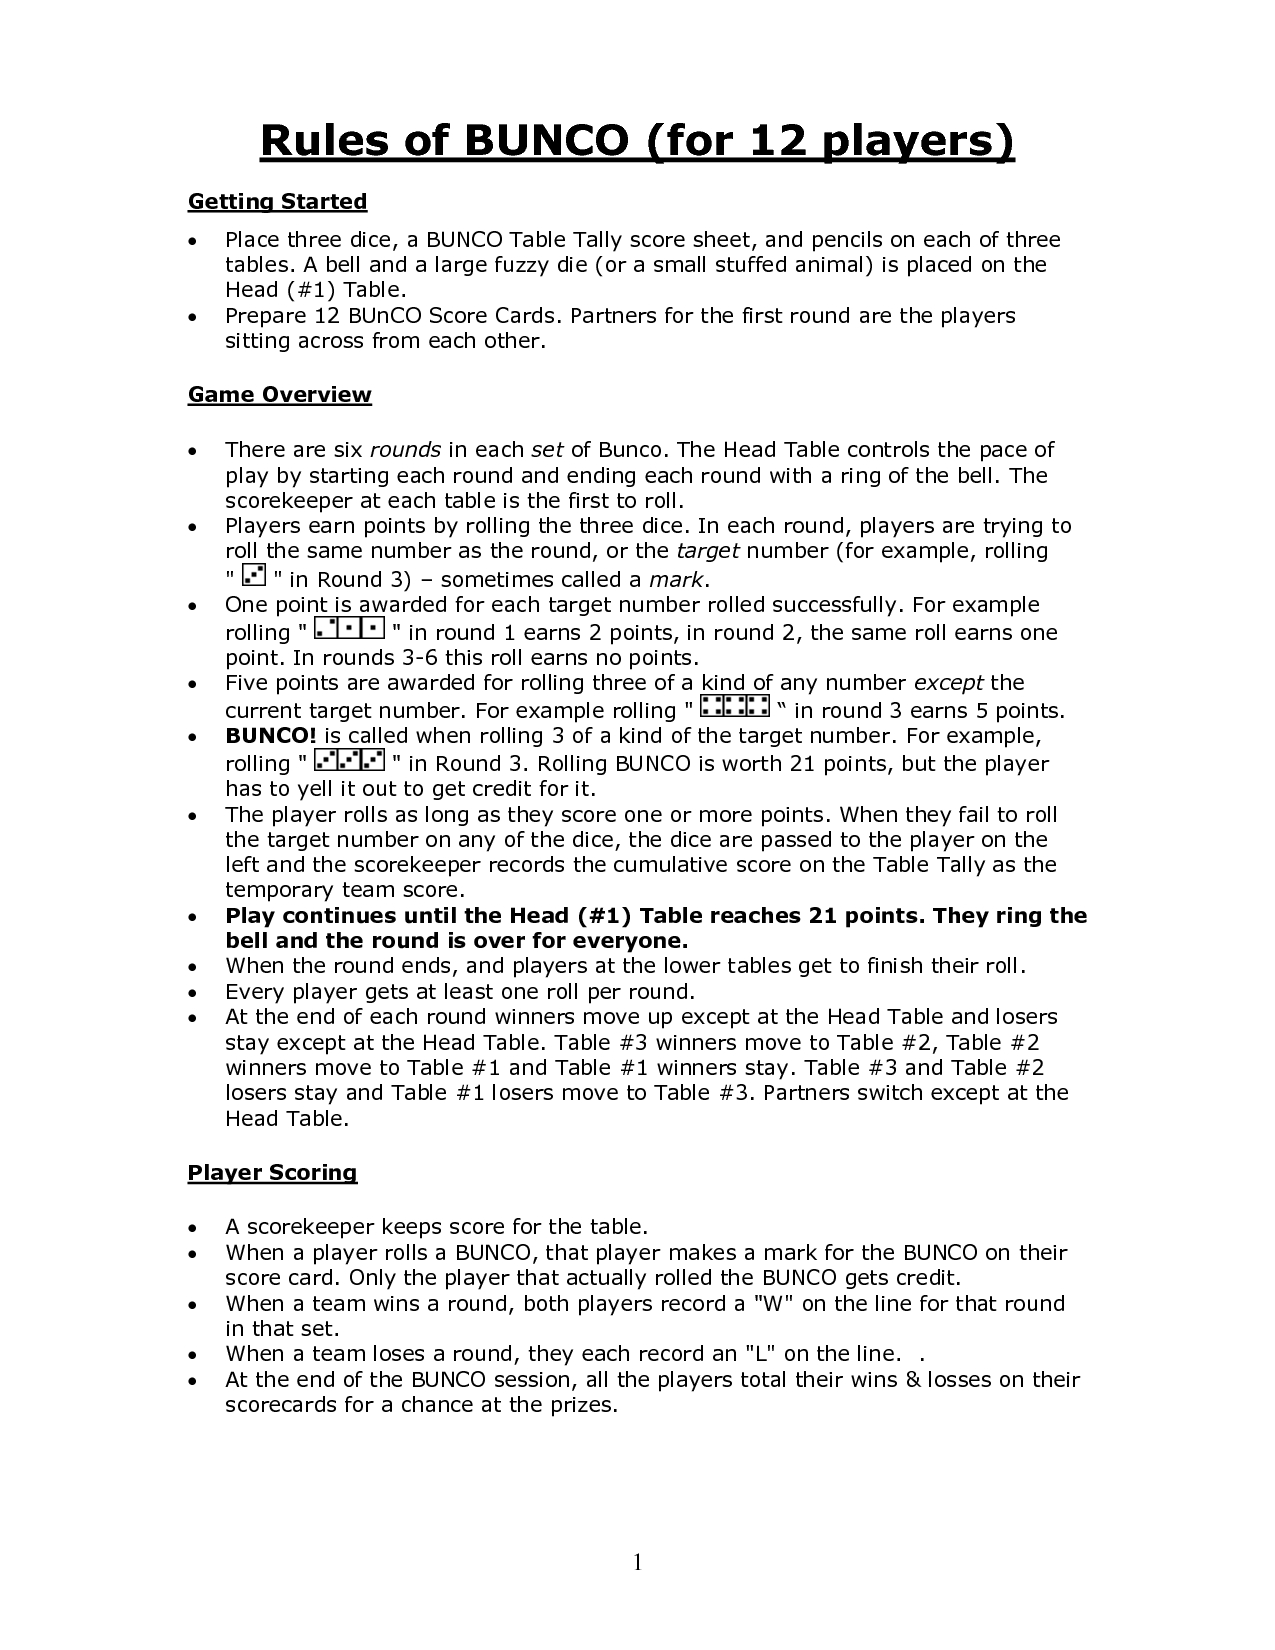 Printable Bunco Rules Rules Of BUNCO for 12 Players Bunco 